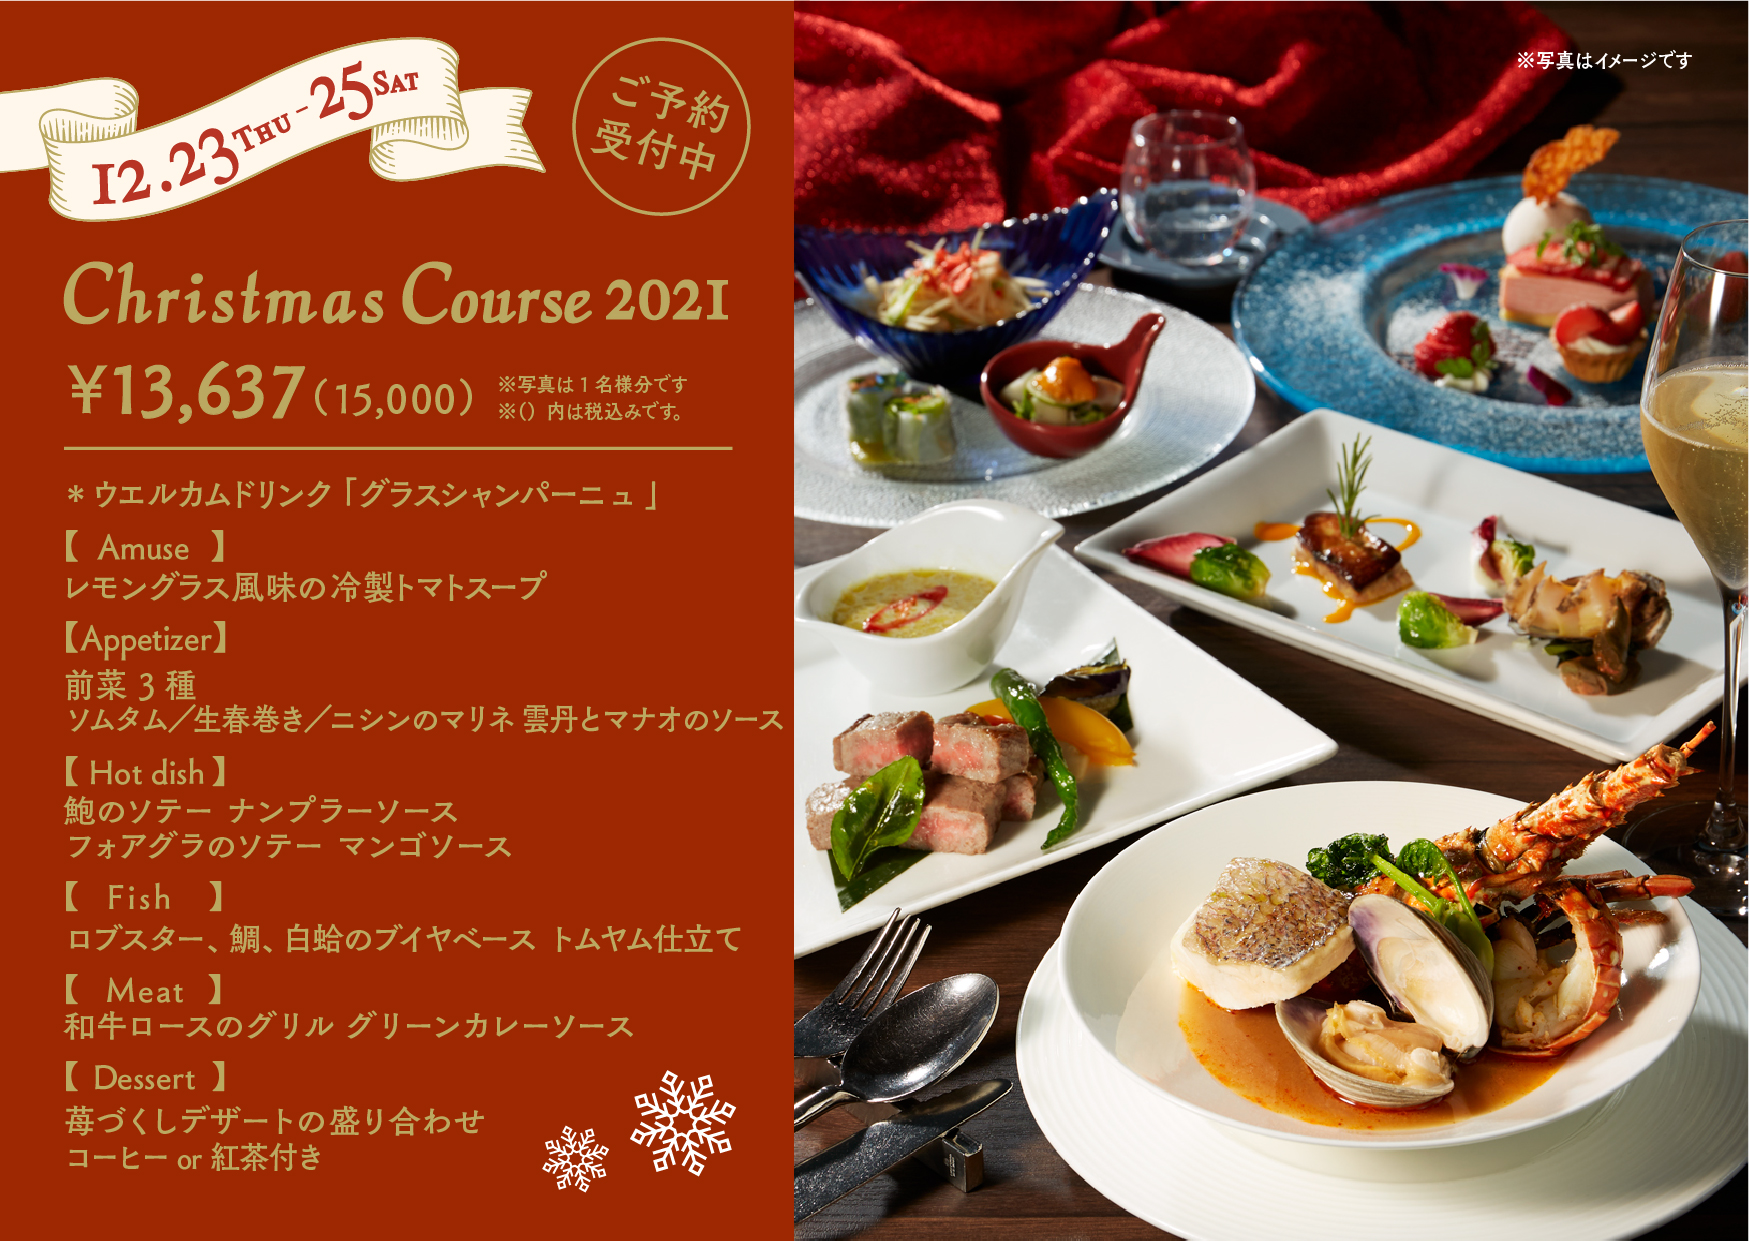 極上の夜景とともに 特別なクリスマスを タイ料理 マンゴツリー東京 クリスマスディナー コース アークランドサービスホールディングス株式会社のプレスリリース